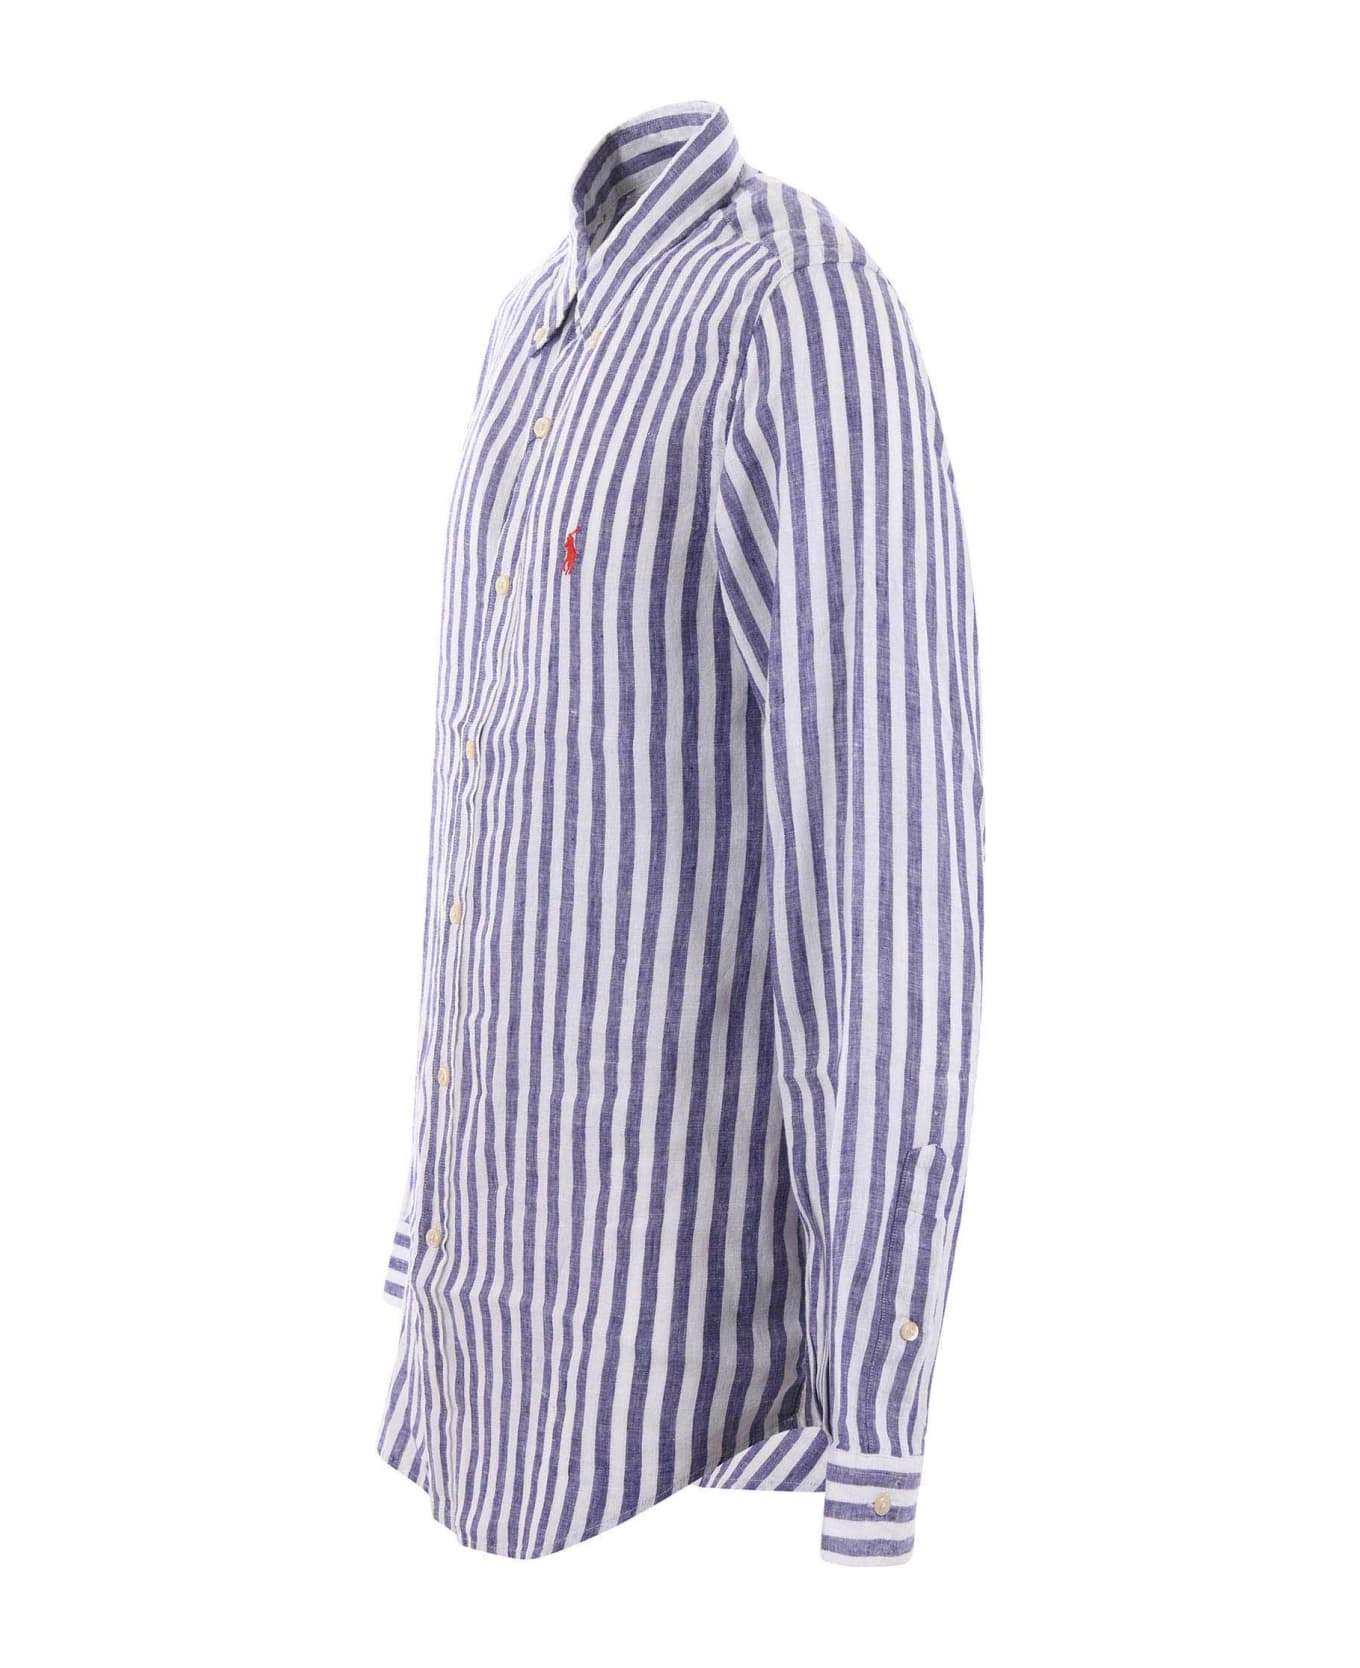 Polo Ralph Lauren Shirt - Bianco/blu シャツ